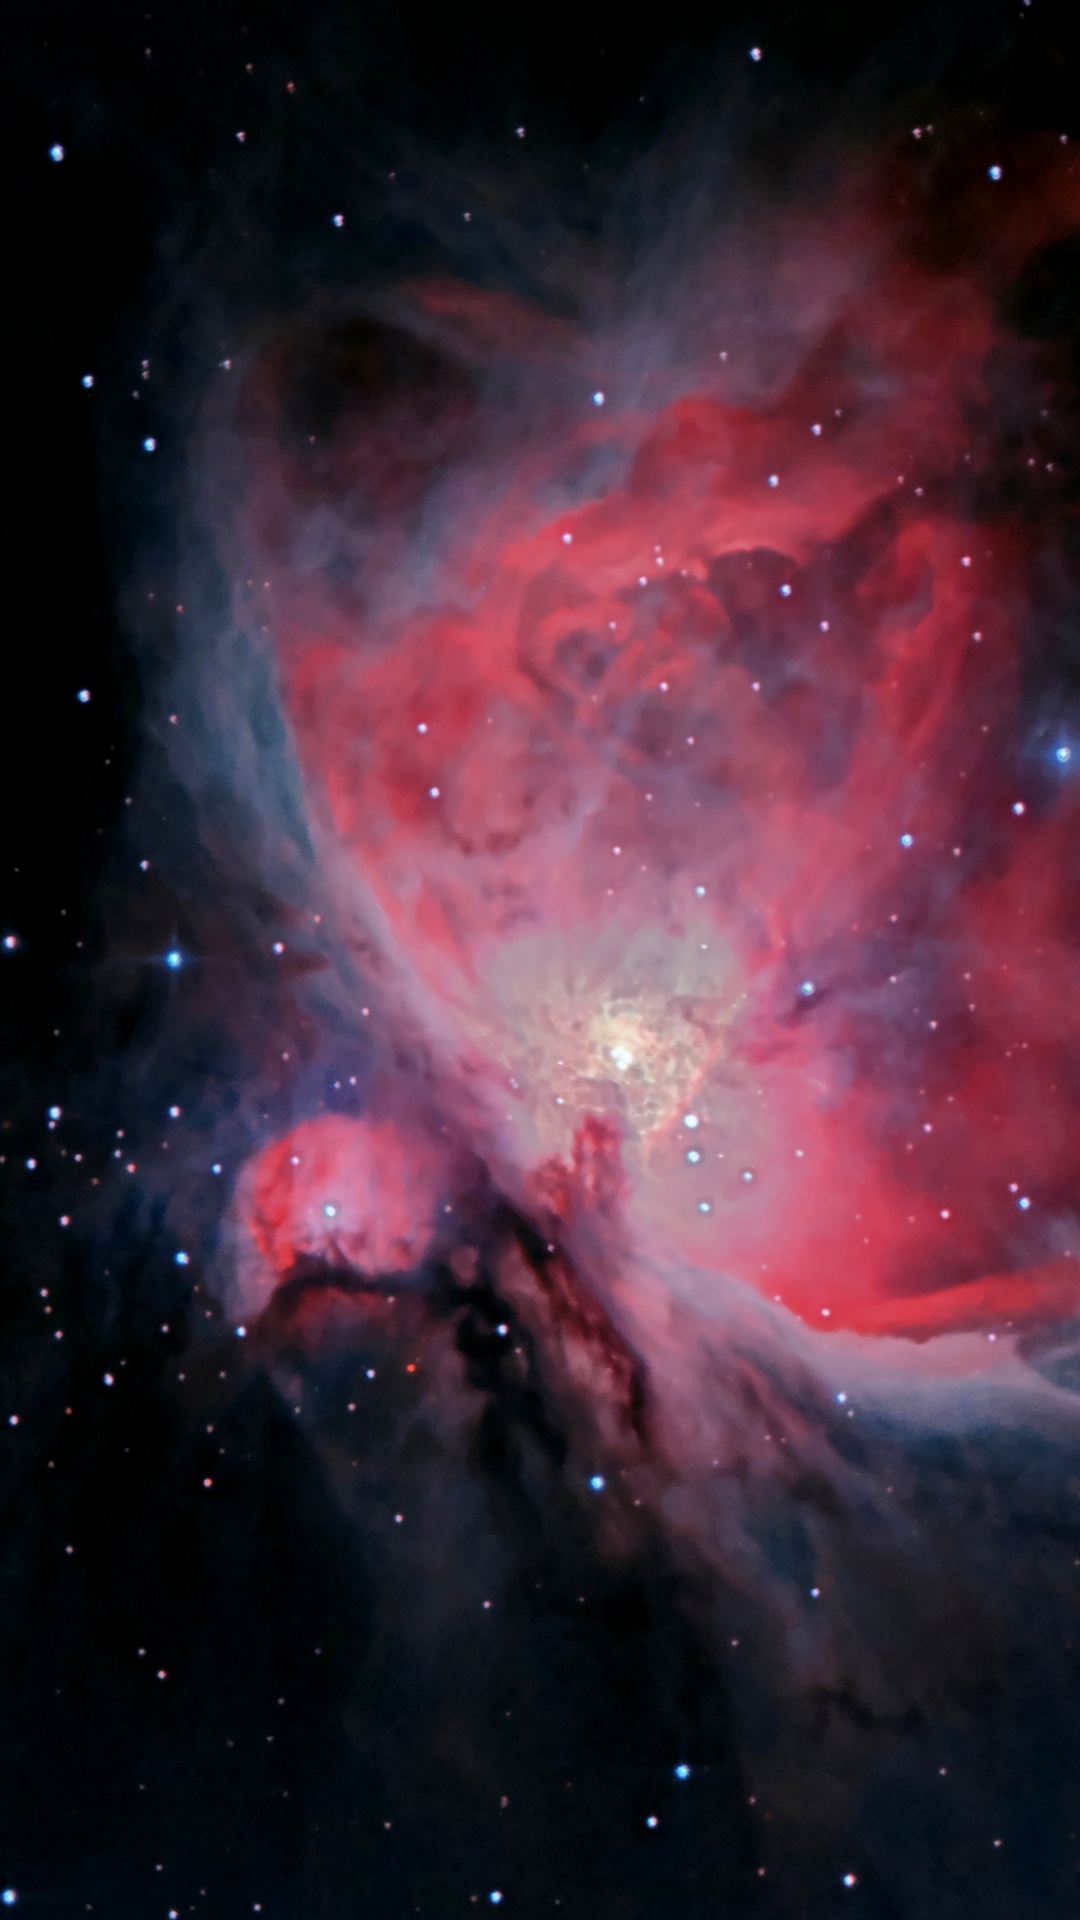 猎户座星云, Sh2-279, Orion, 明星, 外层空间 壁纸 1080x1920 允许